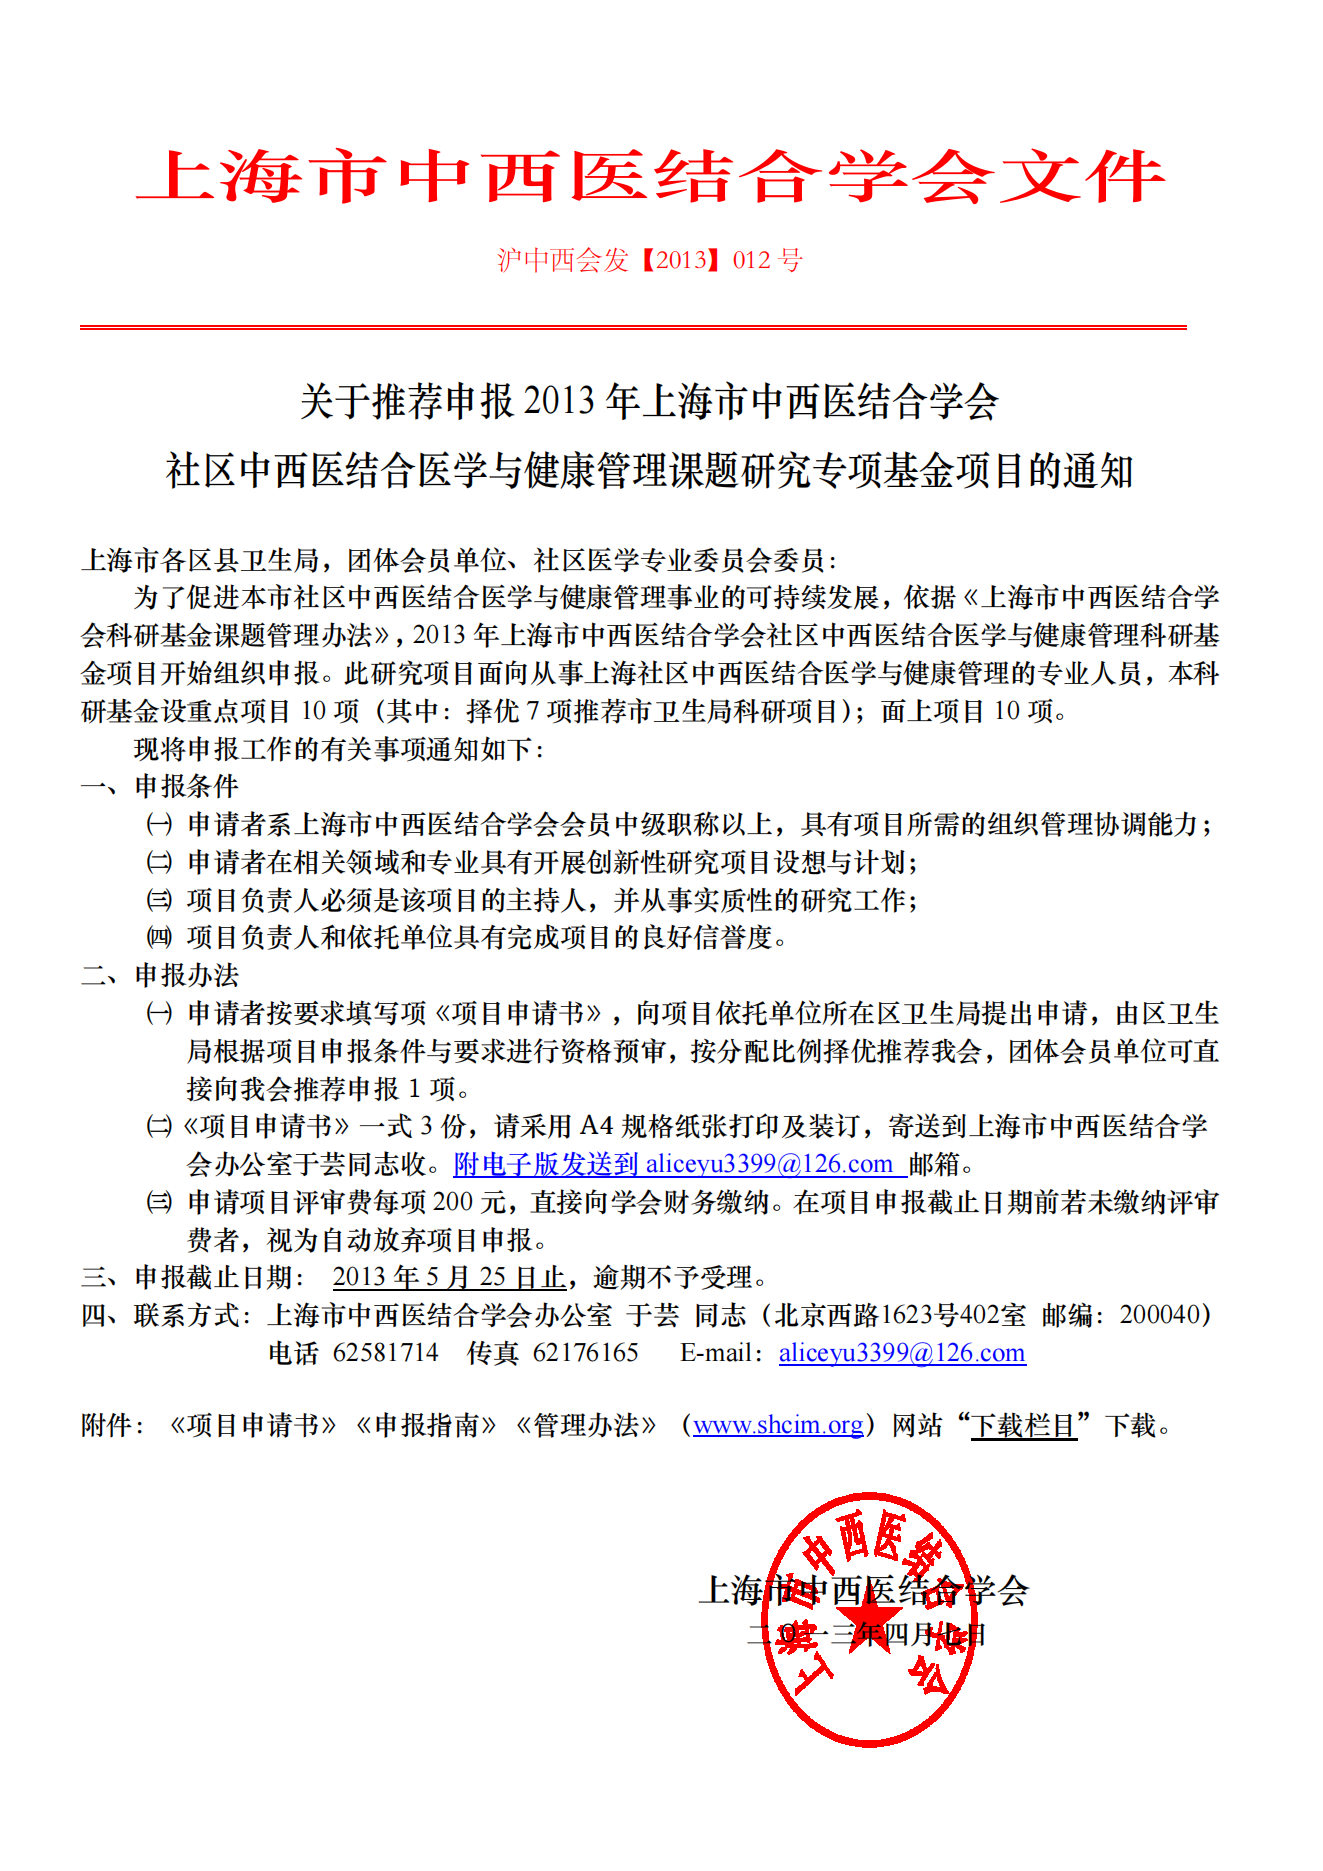 2013年上海市中西医结合学会社区中西医结合医学与健康管理专项基金立项通知_00.png